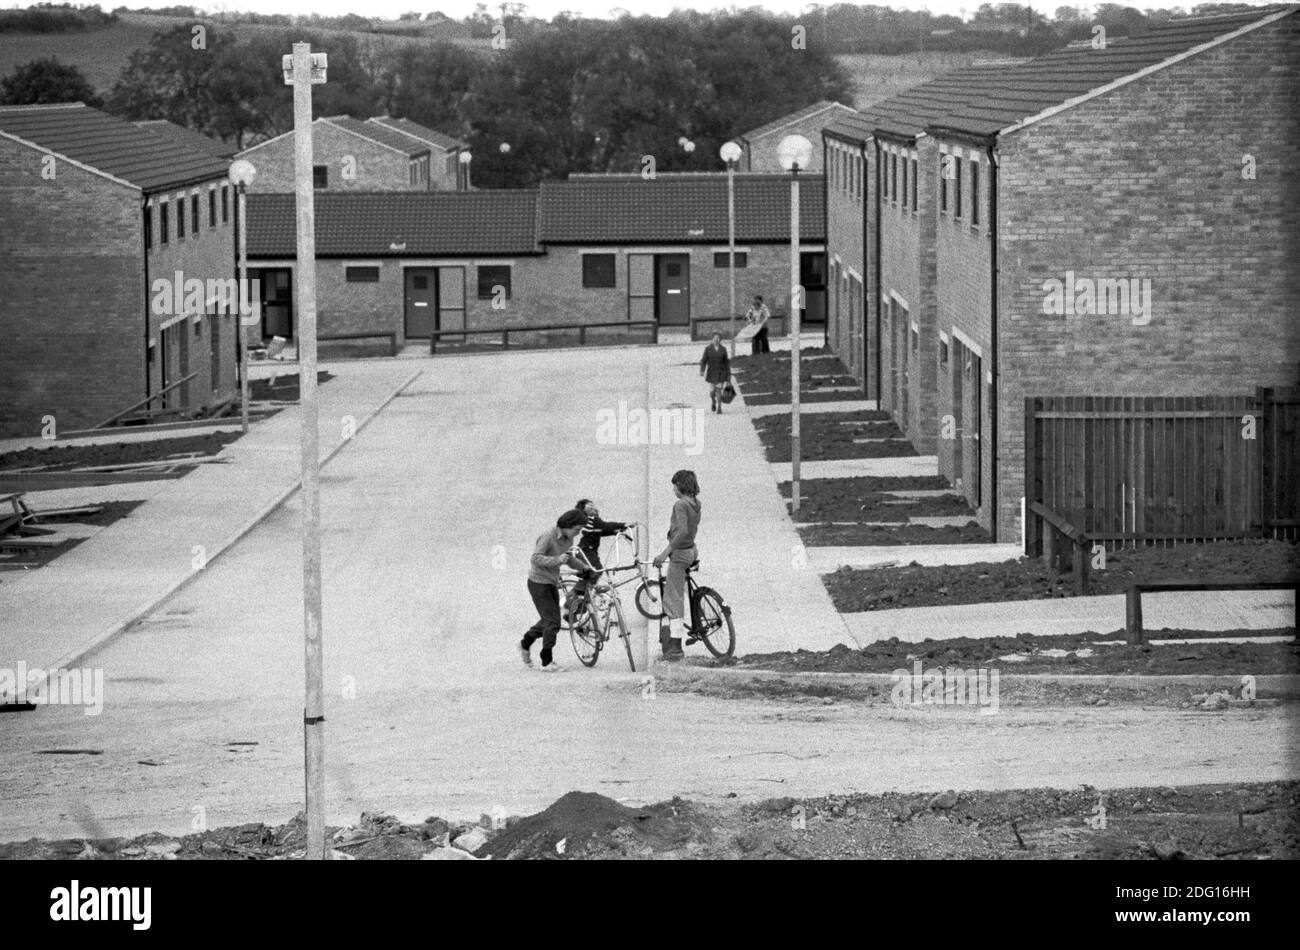 70er Jahre England Neustadt in Entwicklung, Häuser gebaut, aber nicht alle Arbeiten noch fertig, Gärten nicht gepflanzt, aber neue Bewohner haben und ziehen in. Kinder, die auf ihren Fahrrädern in der leeren Straße spielen 1977 HOMER SYKES Stockfoto